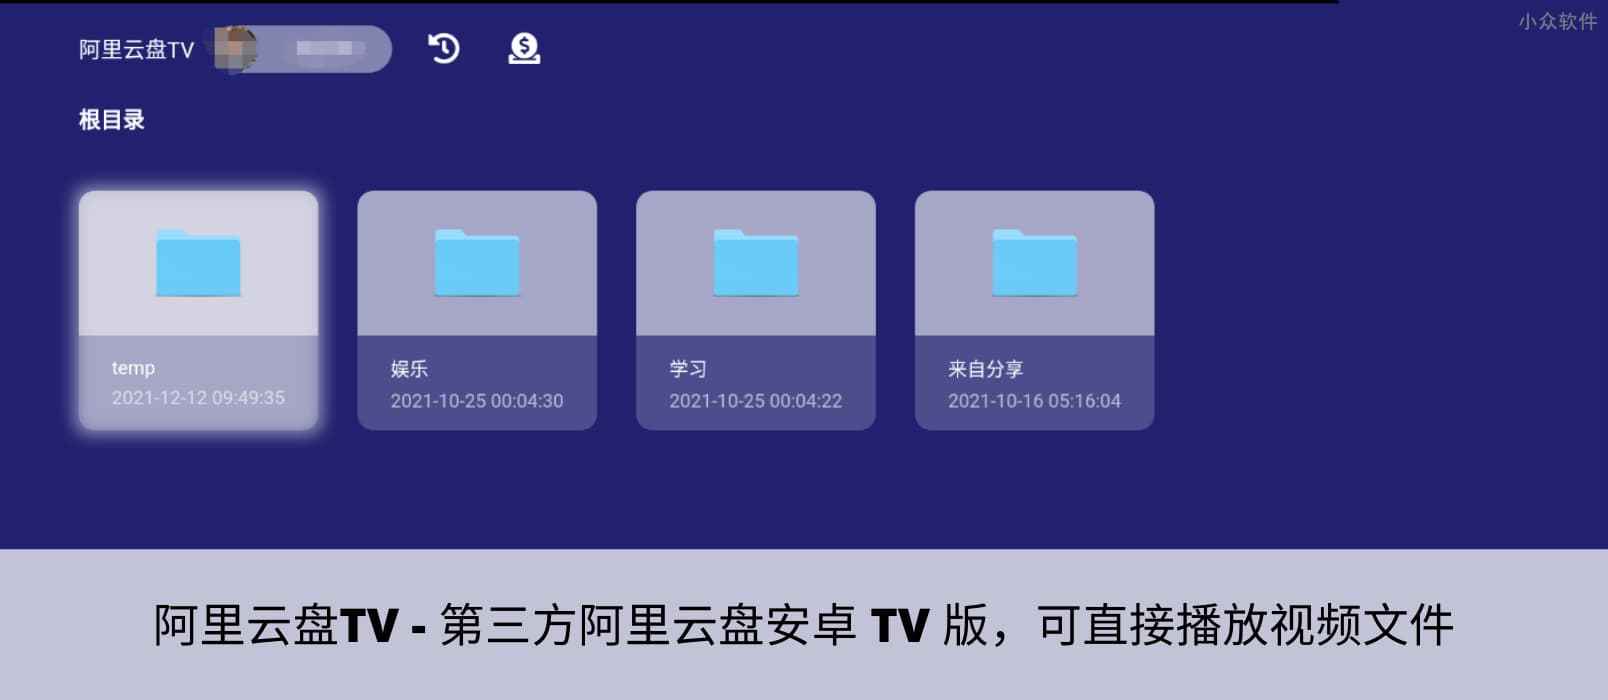 阿里云盘TV – 第三方阿里云盘安卓 TV 版，可直接播放视频文件